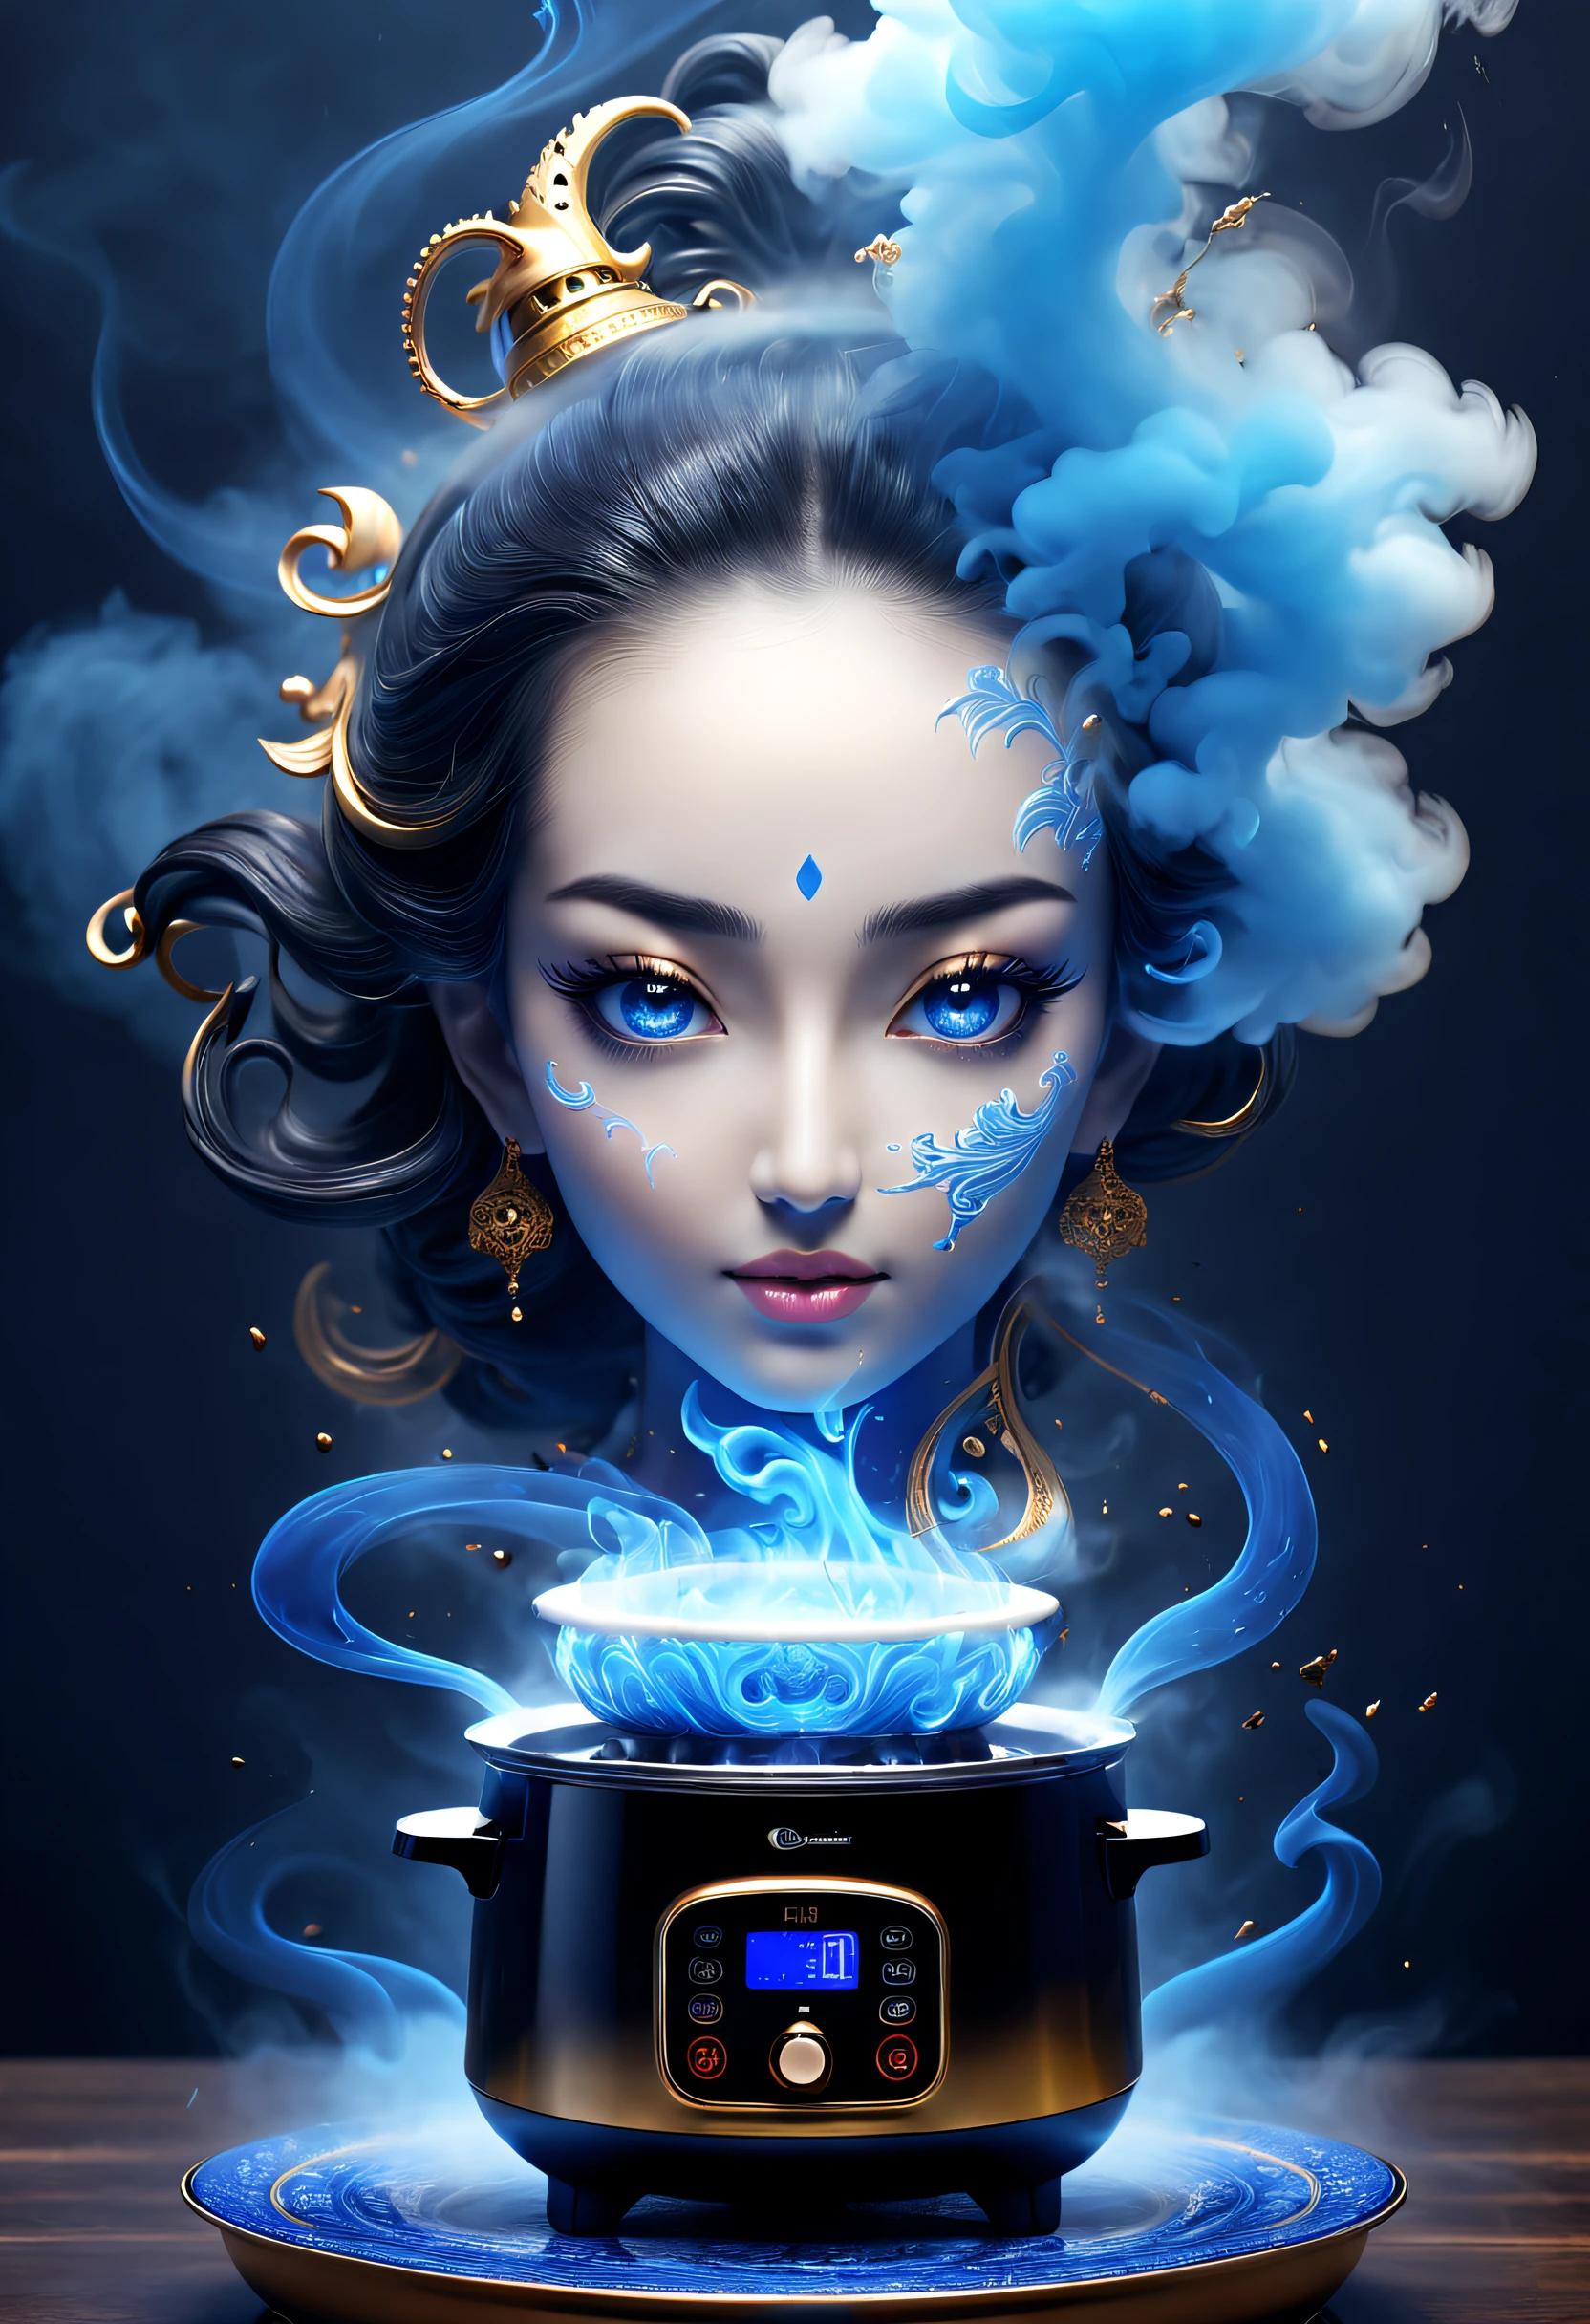 (最高品質,4k,8K,高解像度,傑作:1.2),超詳細,AI炊飯器から出る謎の青い煙,青い煙によって形成された透明な女神の頭,千夜一夜物語にインスピレーションを受けて,アラジンにインスピレーションを得た&#39;魔法のランプ,キッチンの背景,SFアート,素晴らしい,素晴らしいおとぎ話,超リアル,神話的な映画，抽象化された，様式化された